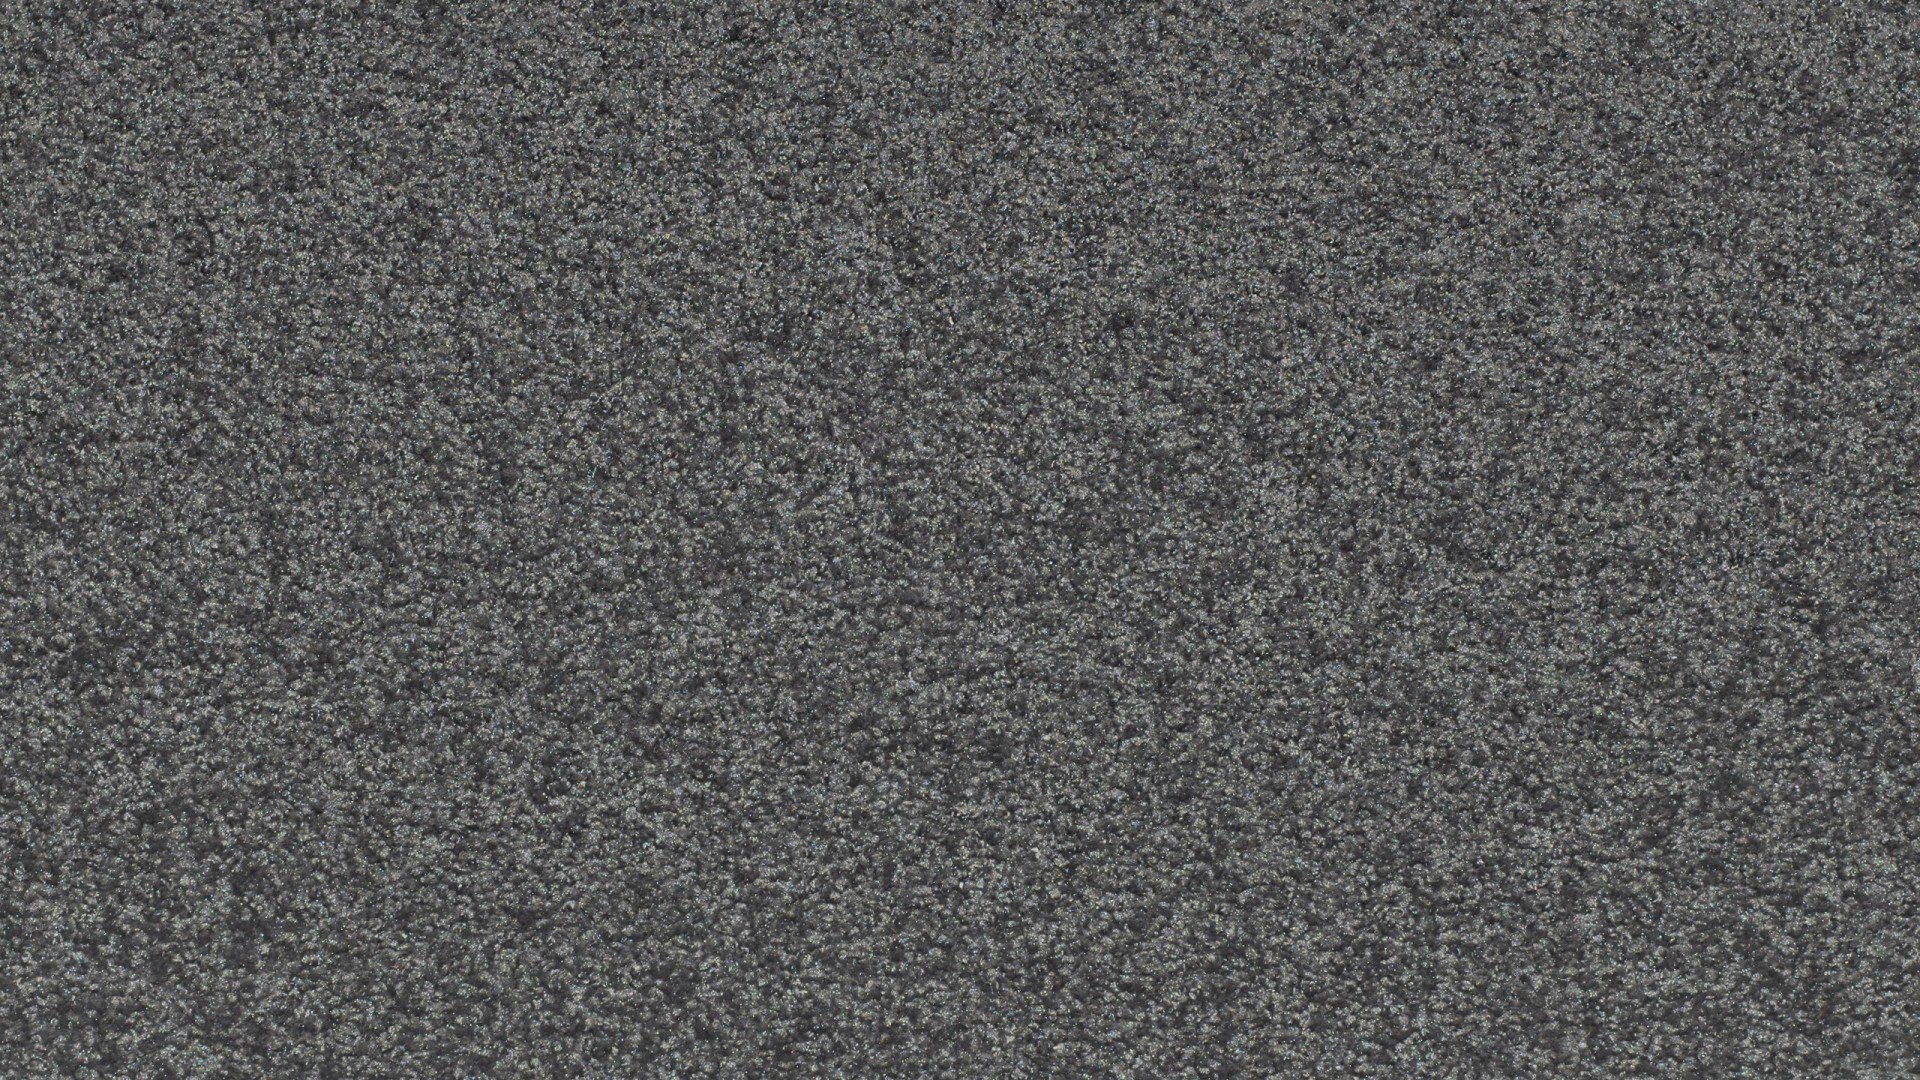 volkswagen fondo de pantalla,negro,gris,asfalto,modelo,piso